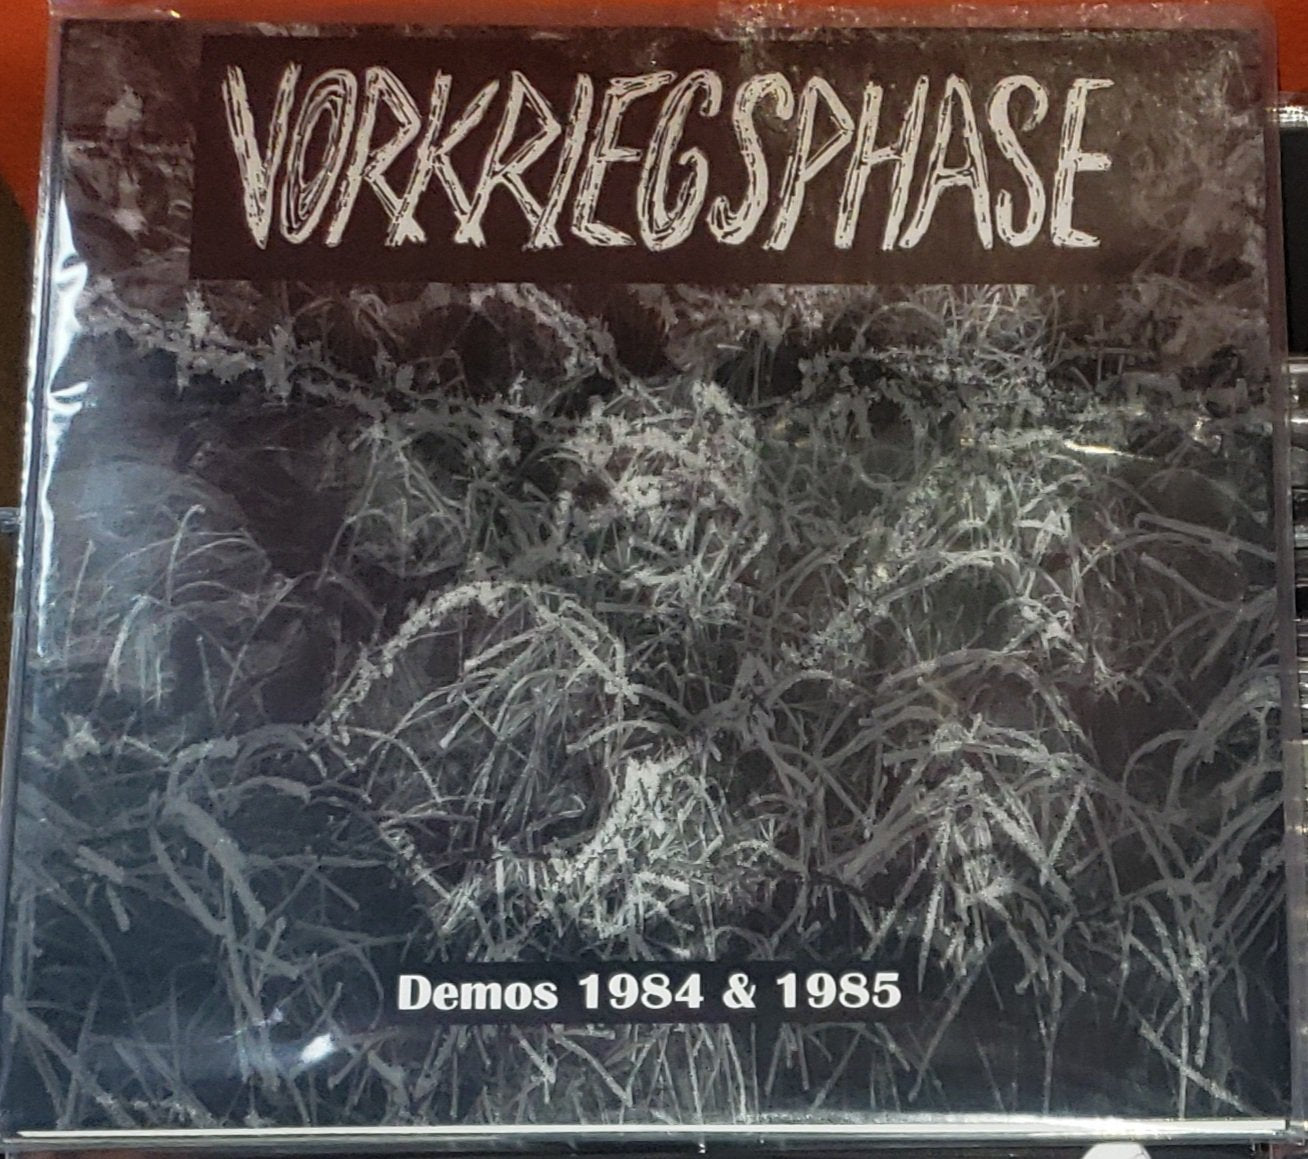 VORKRIEGSPHASE - DEMOS 1984 & 1985 Vinyl LP